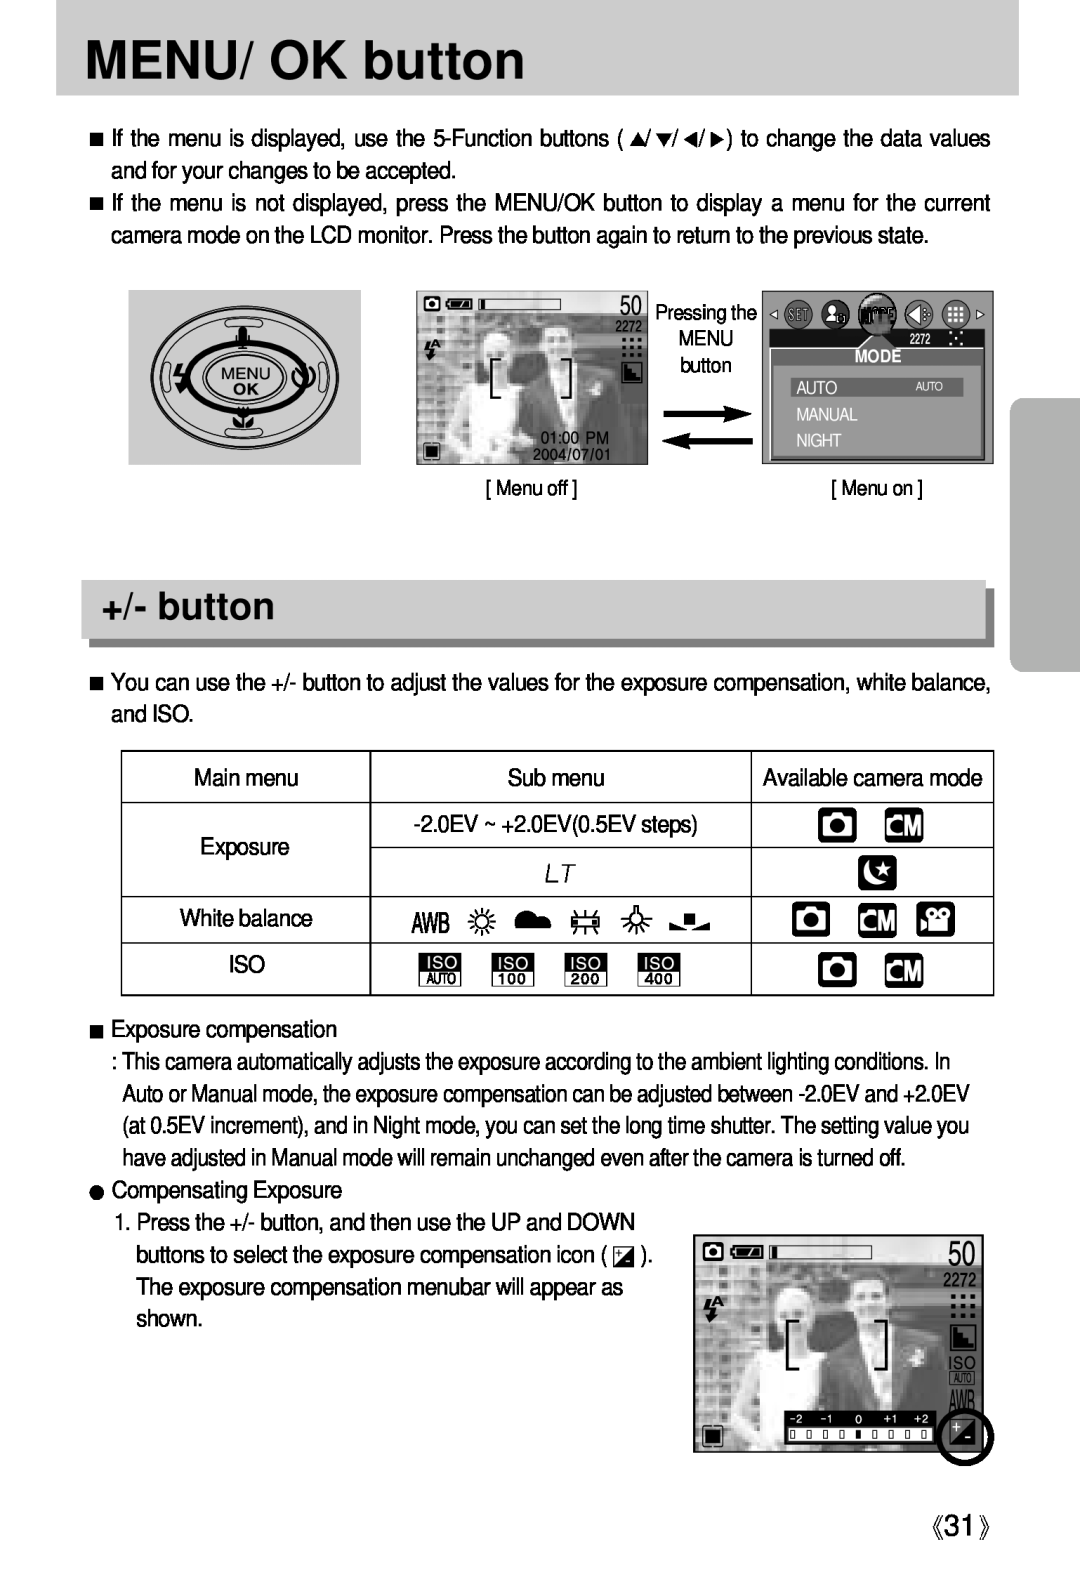 Samsung Digimax U-CA user manual MENU/ OK button, +/- button 